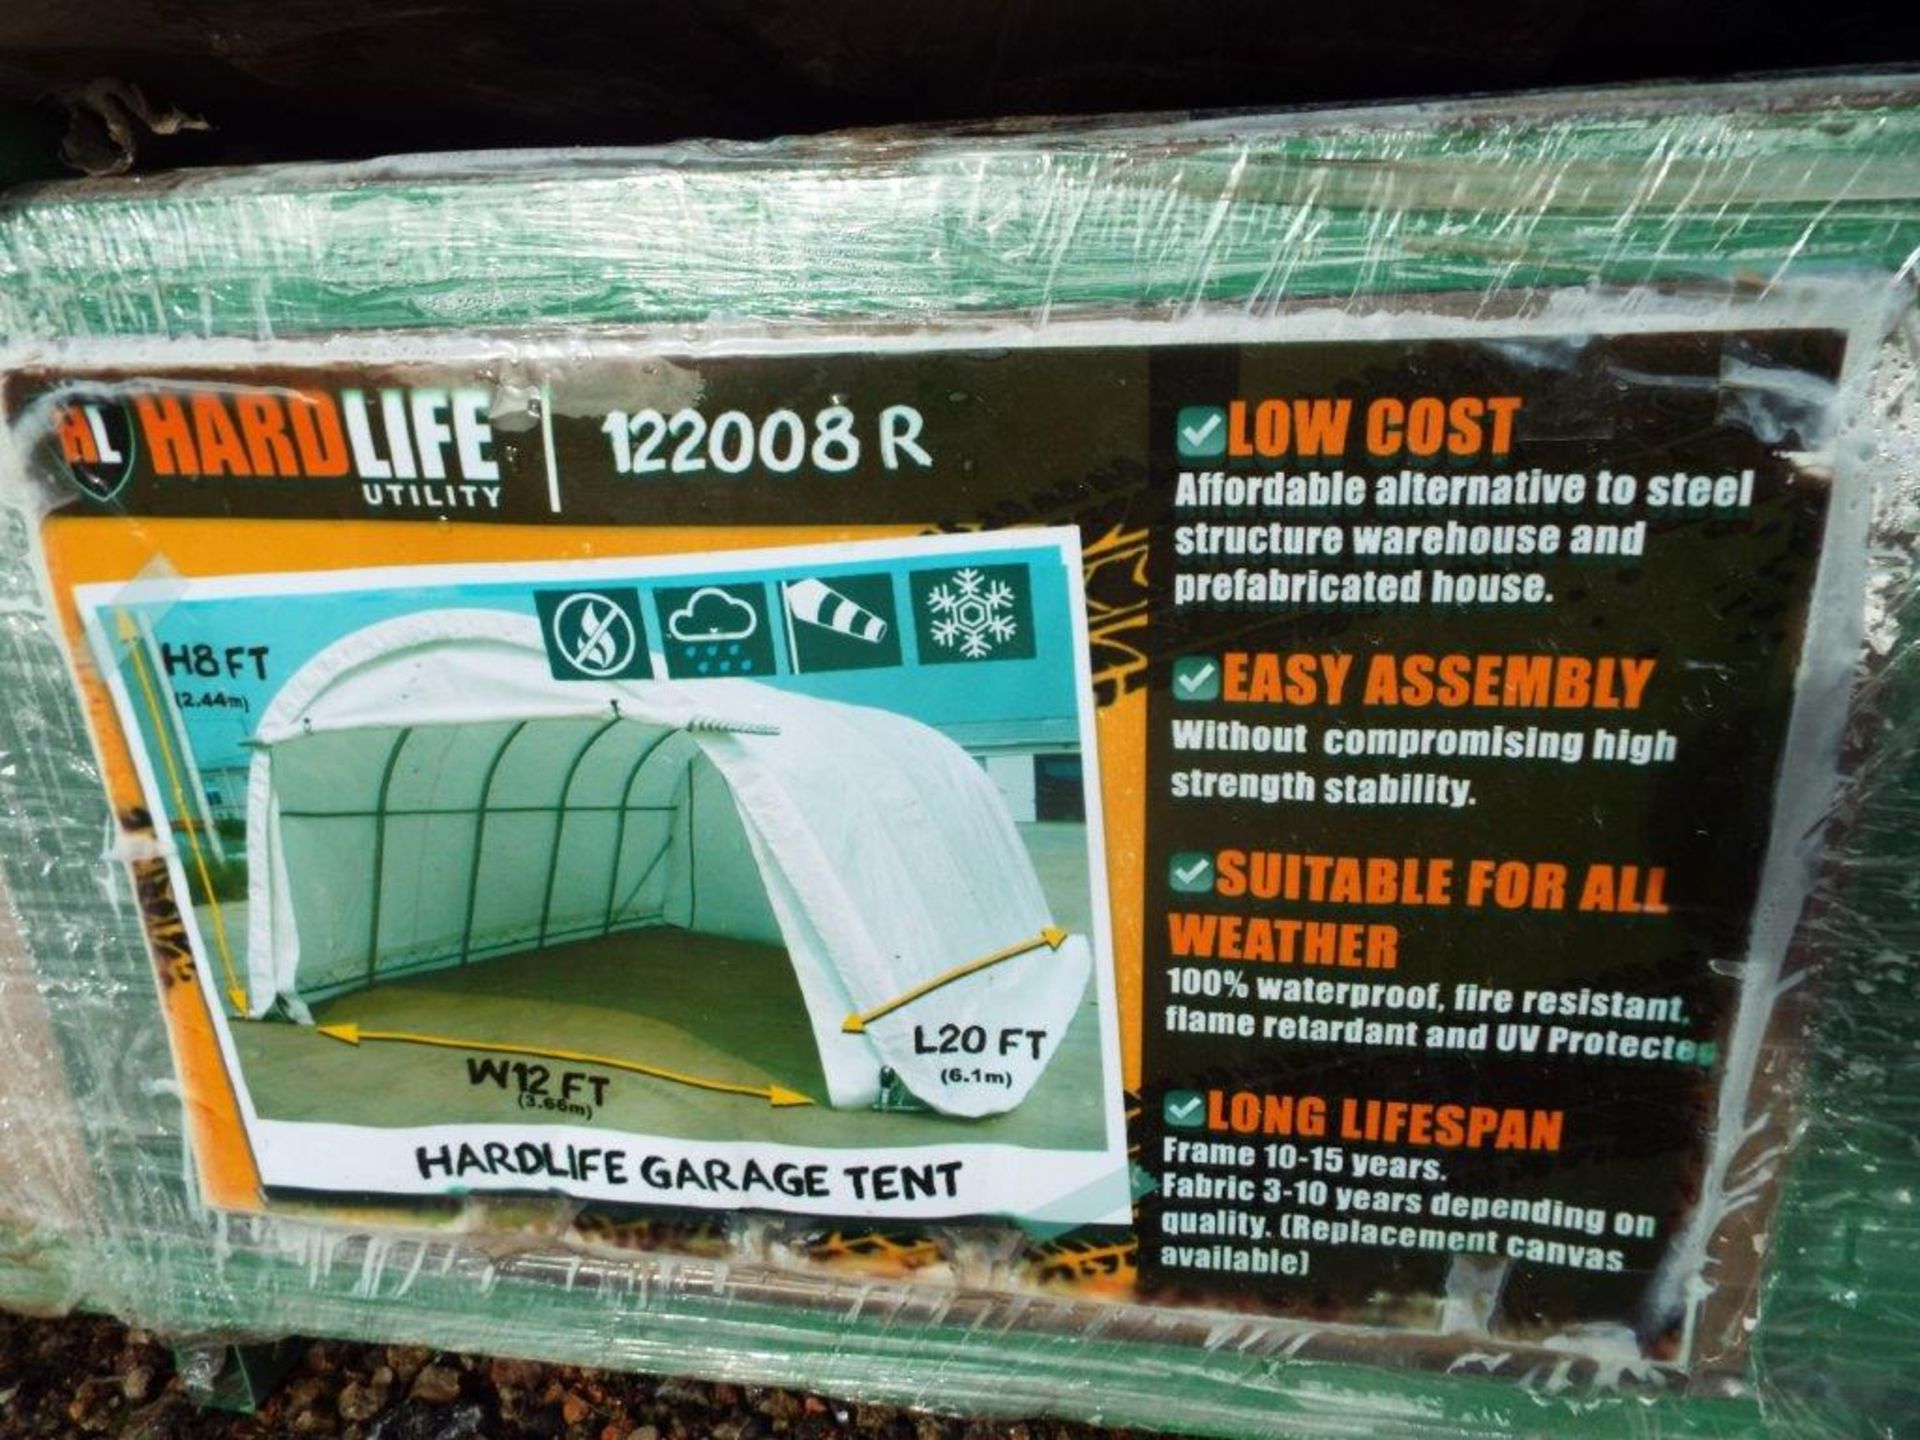 Hardlife Garage Tent 12'W x 20'L x 8' H P/No 122008R - Image 2 of 5